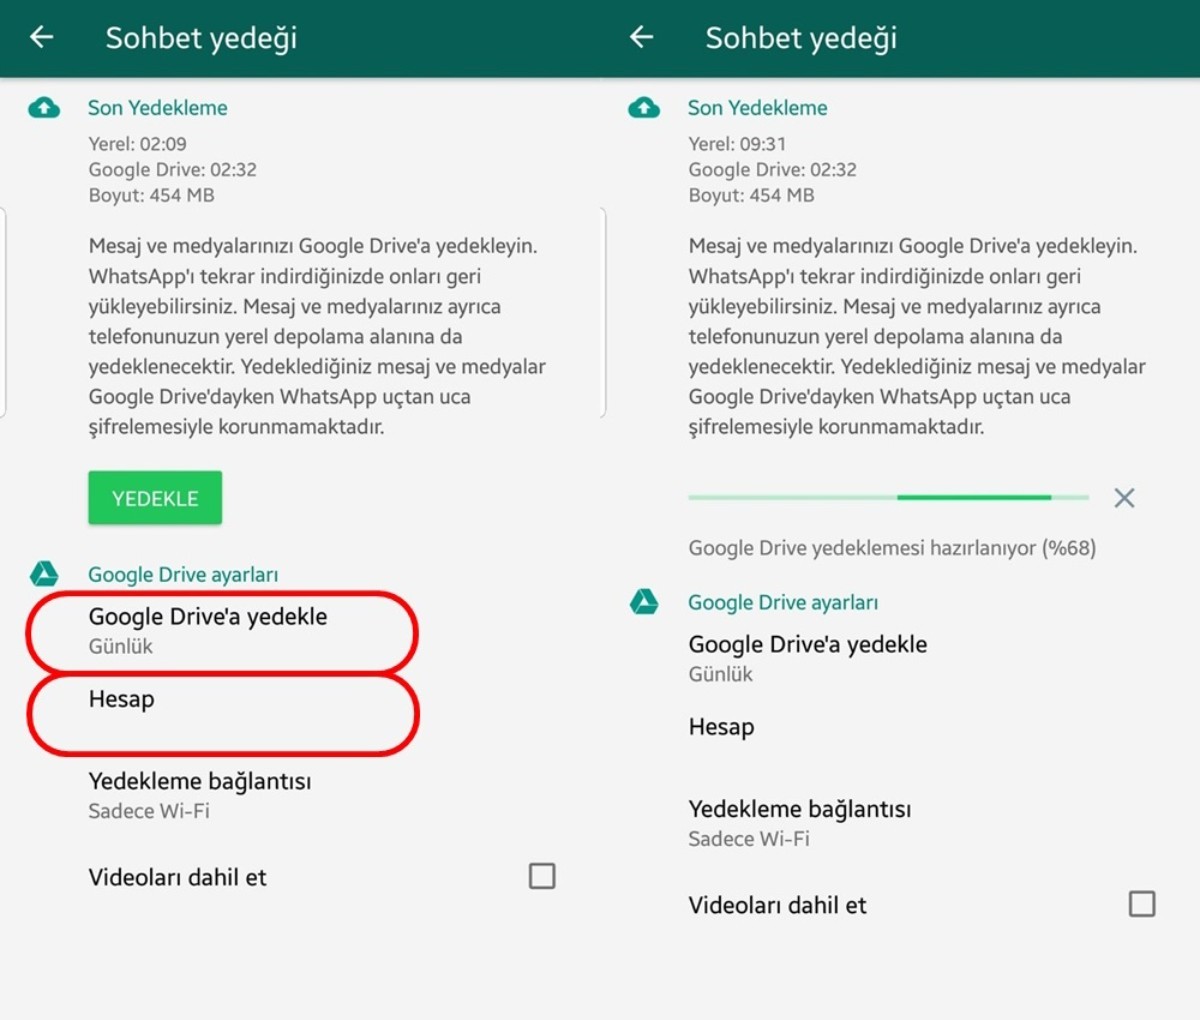 WhatsApp beta kullanıcılarının mesaj depolama alanı Google Drive'a yedeklenecek.